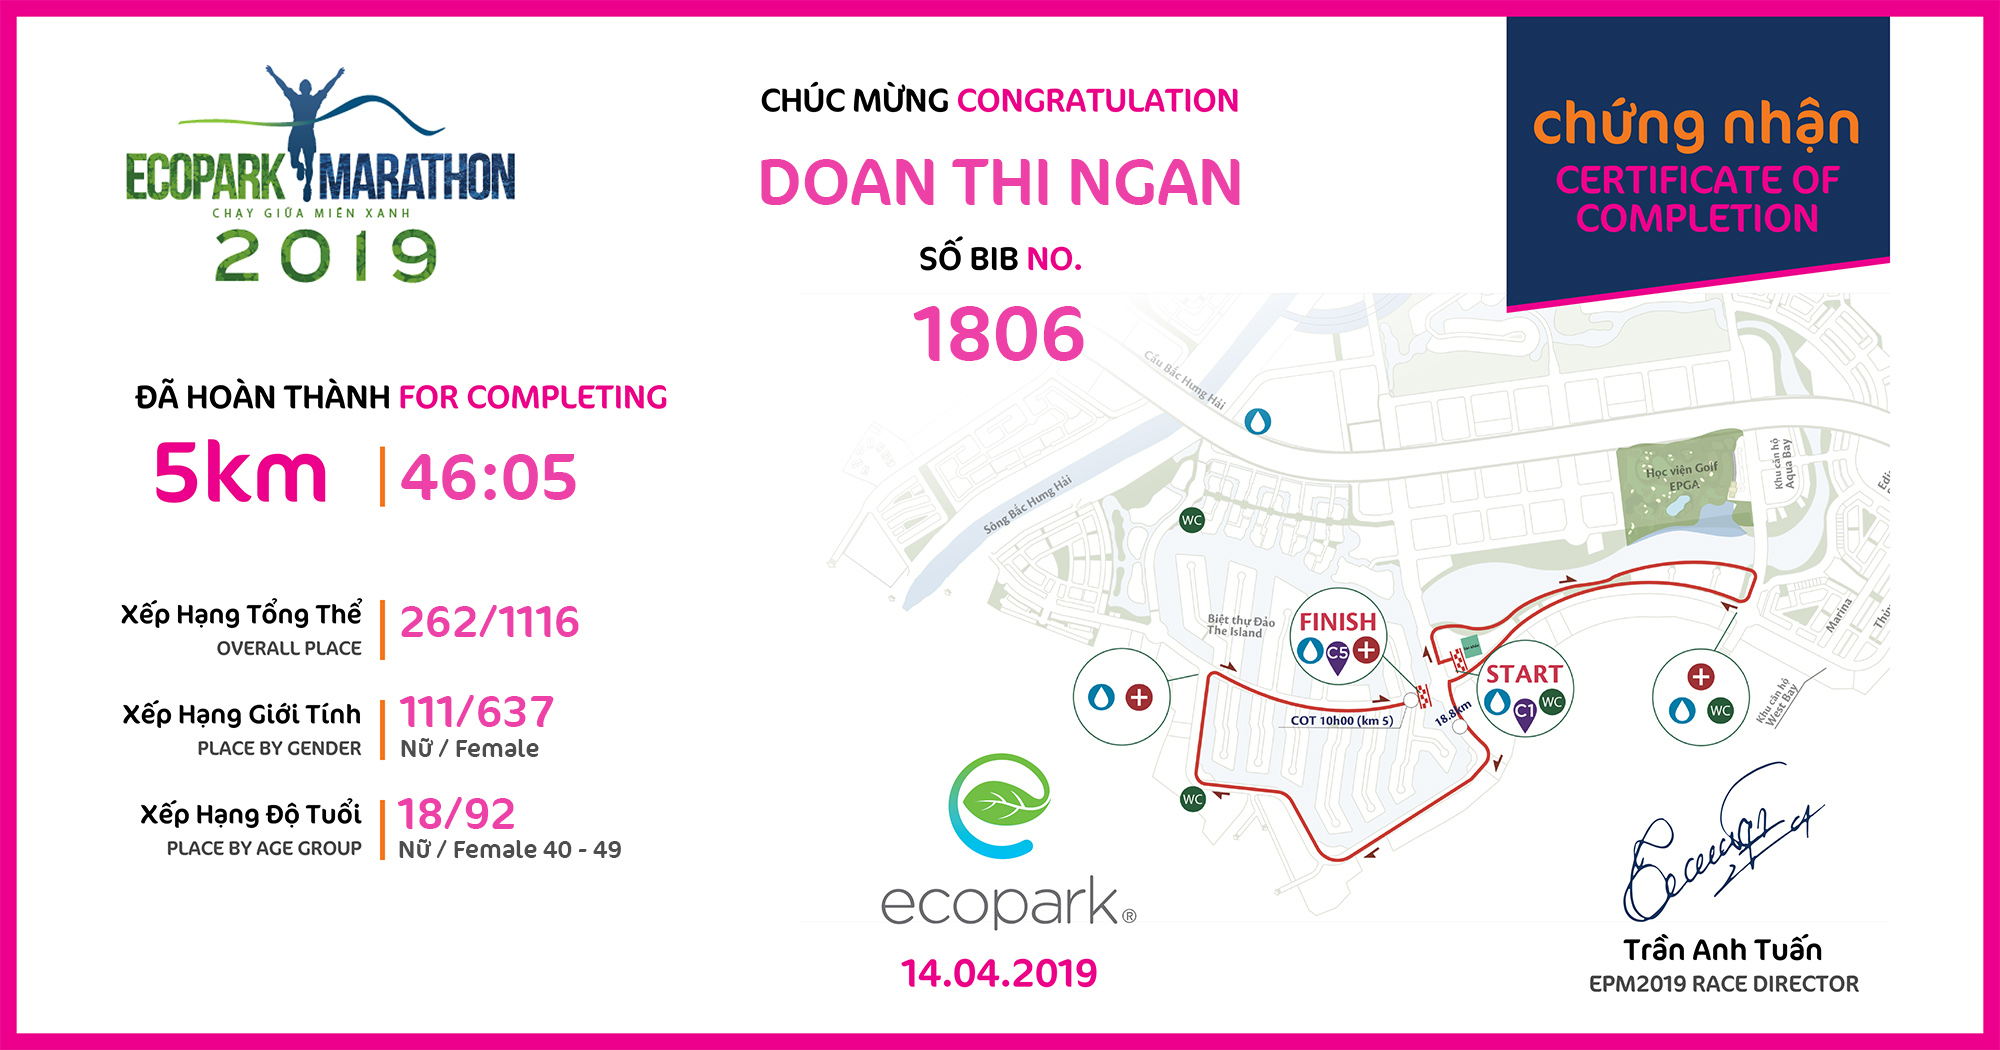 1806 - Doan Thi Ngan